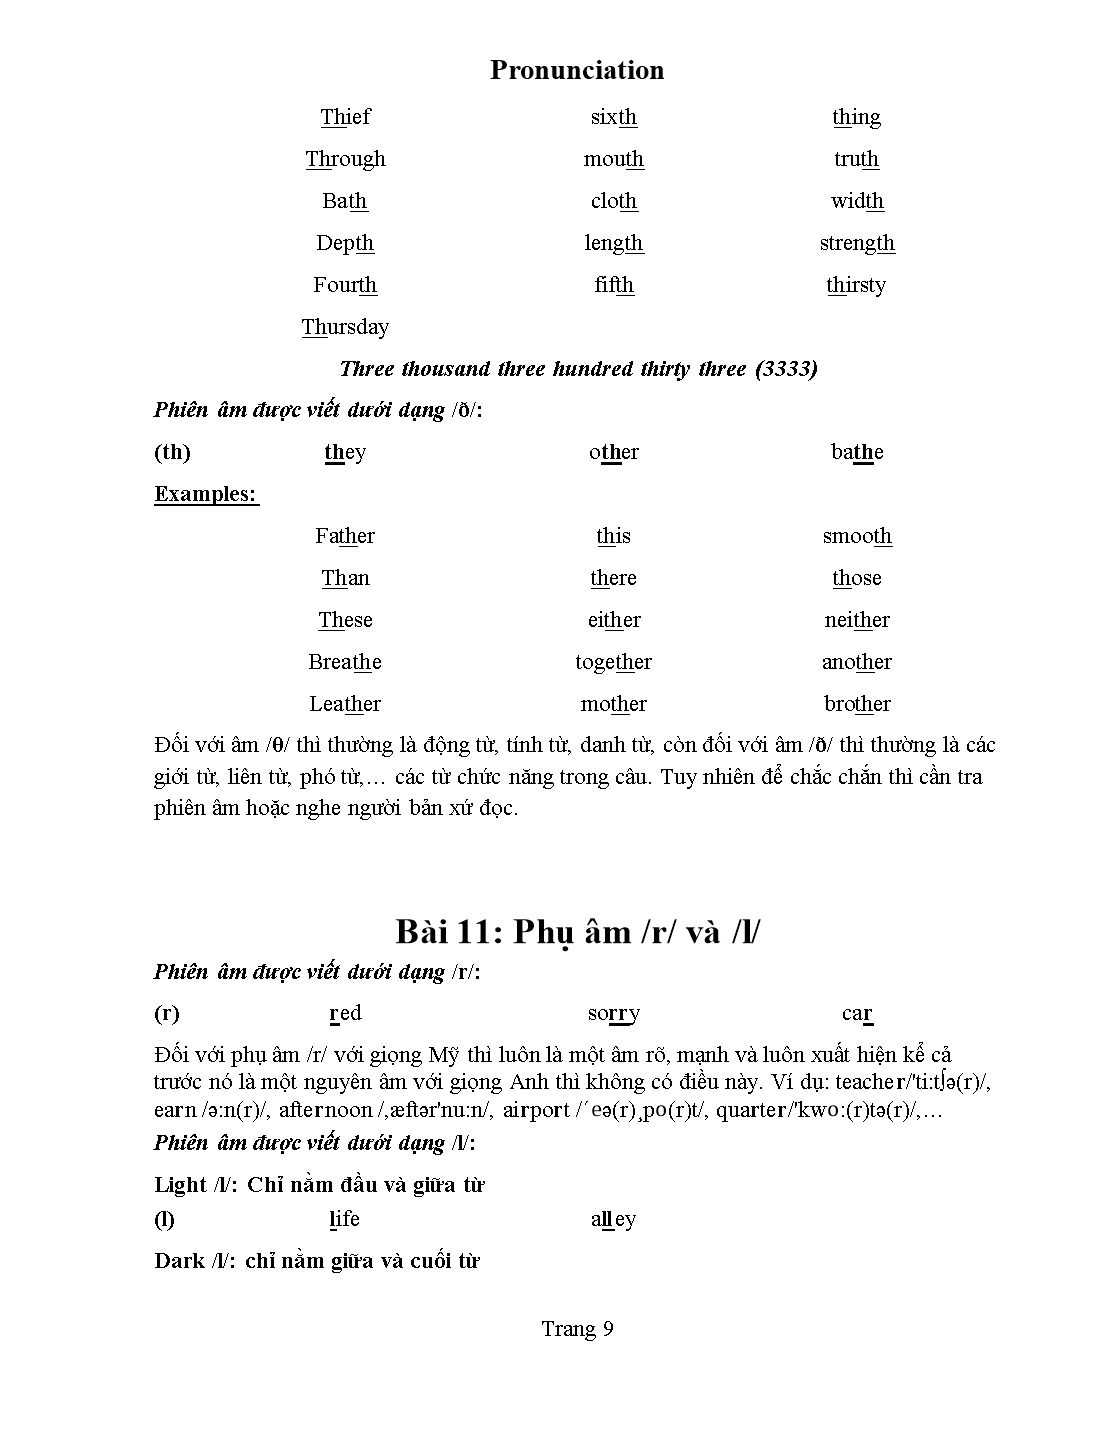 Tài liệu Pronunciation - Kim Thanh trang 10